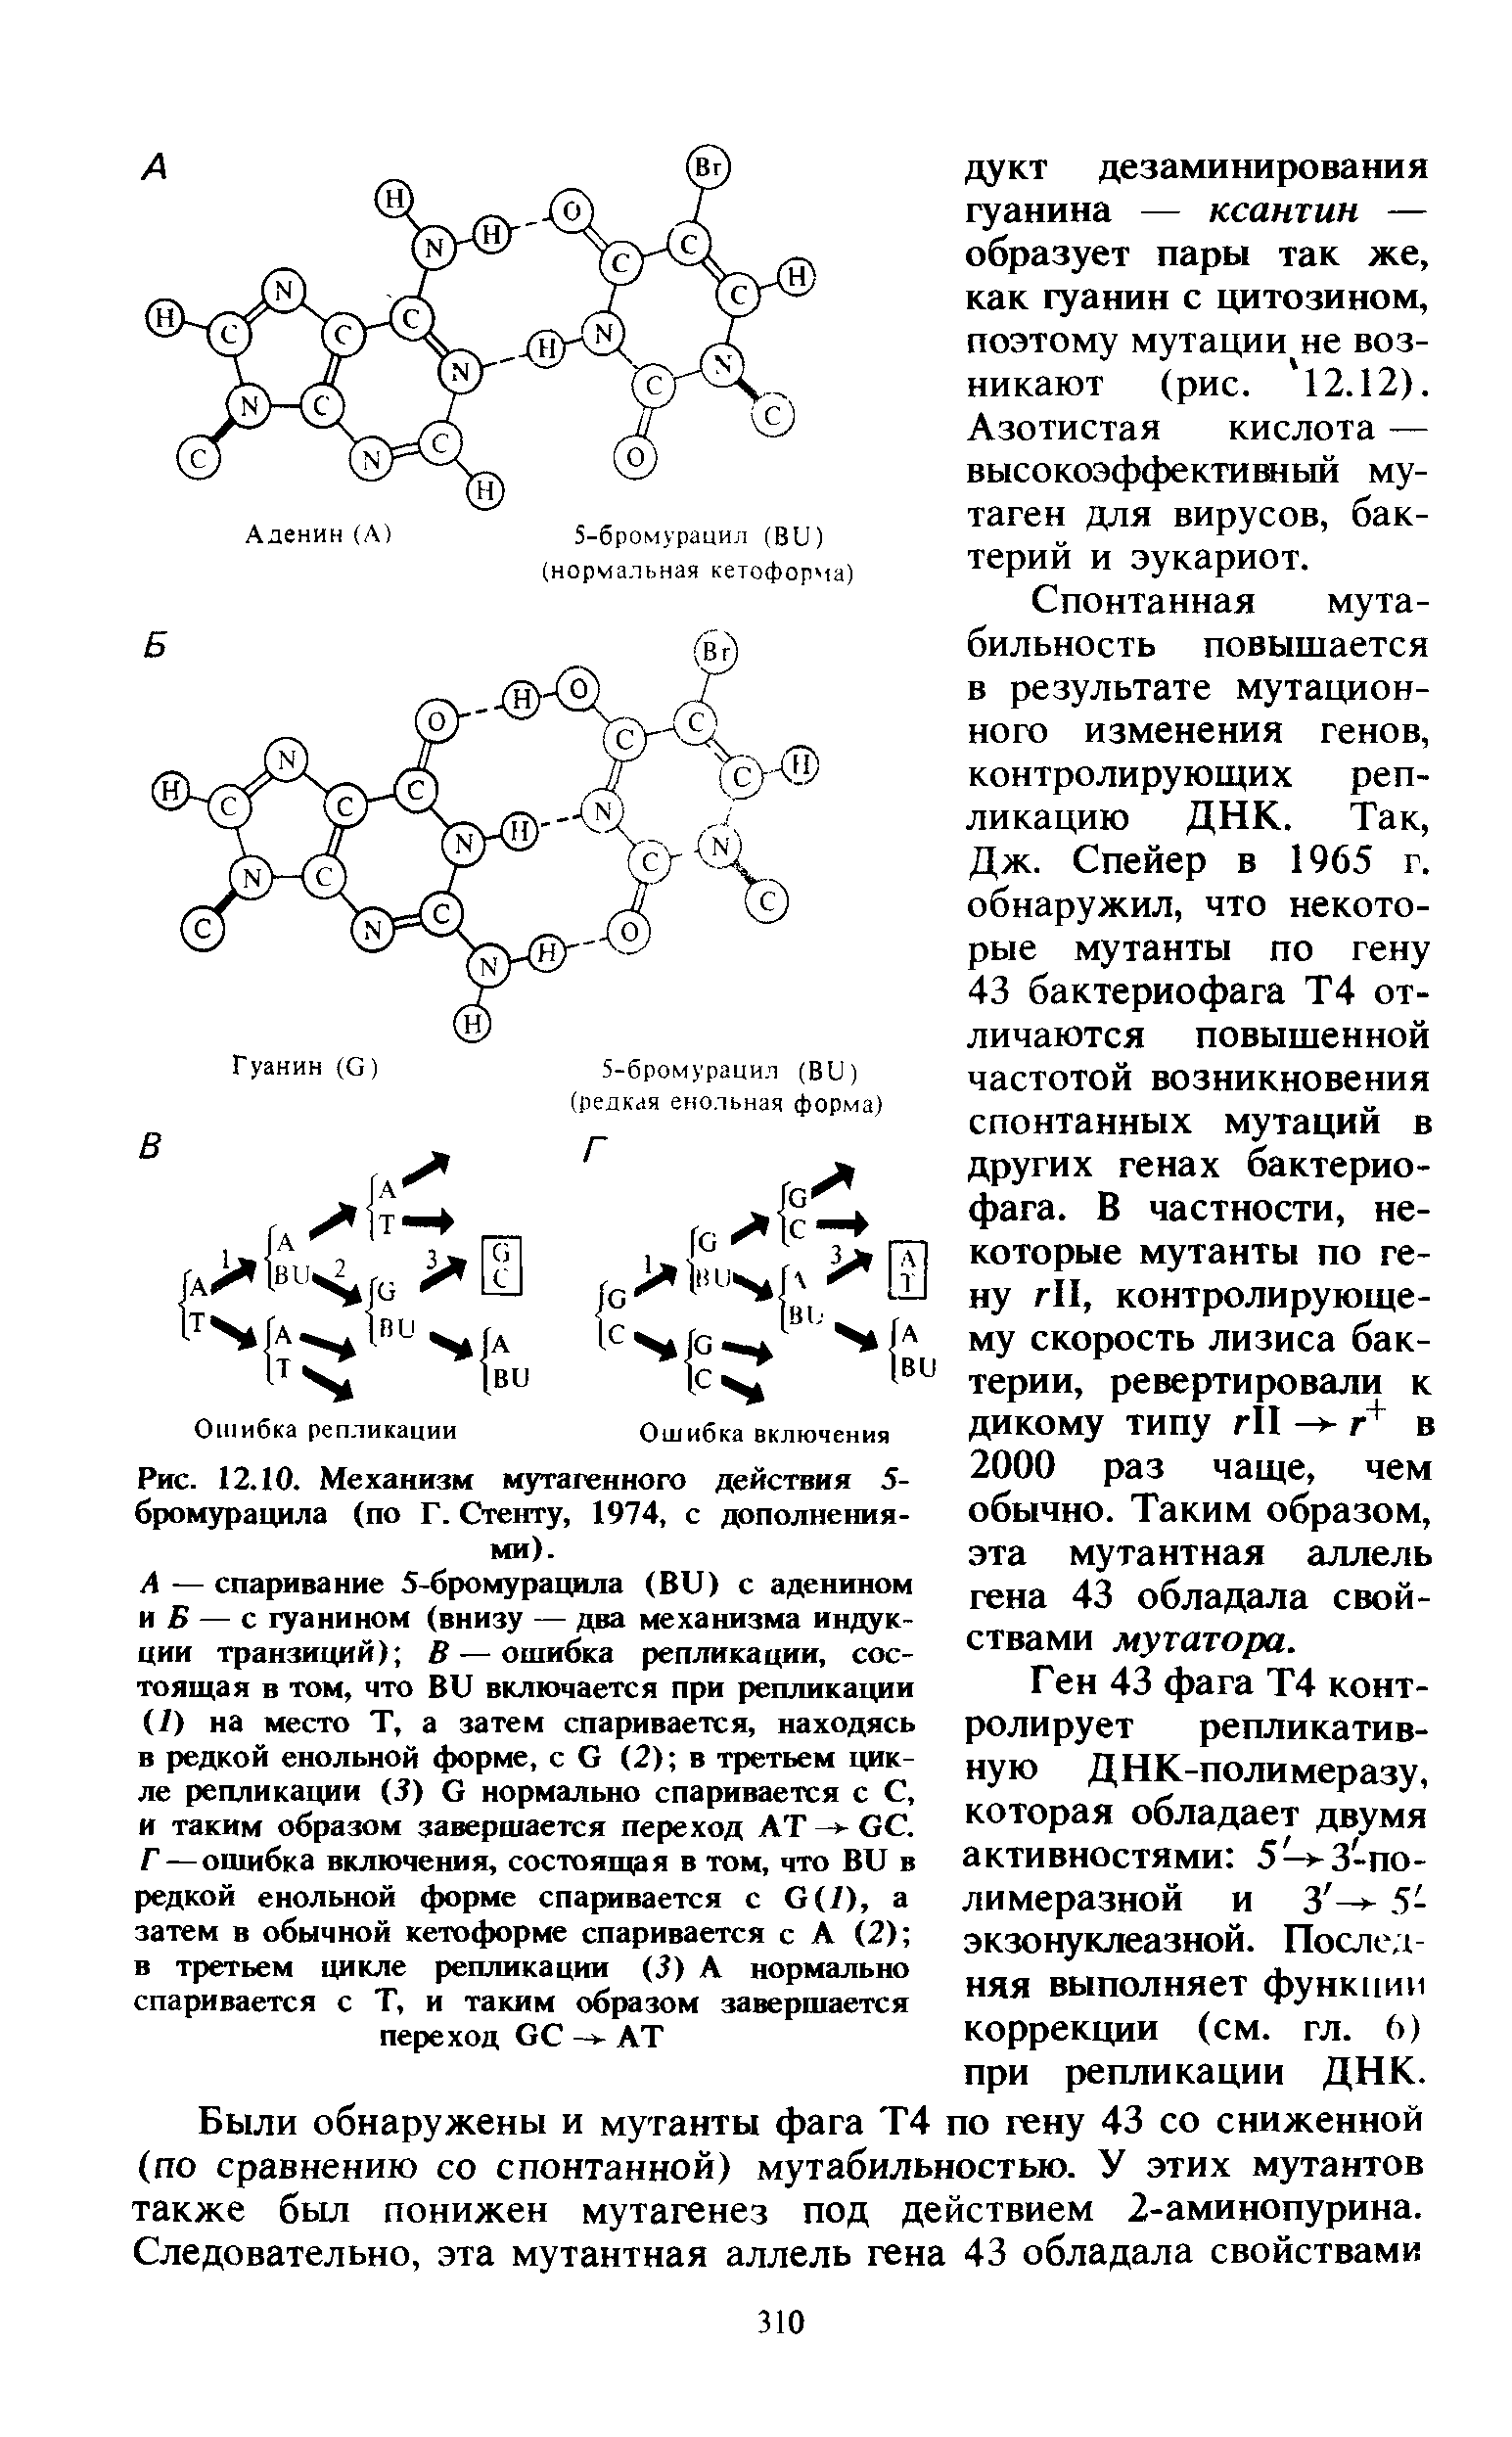 Рис. 12.10. Механизм мутагенного действия 5-бромурацила (по Г. Стенту, 1974, с дополнениями).